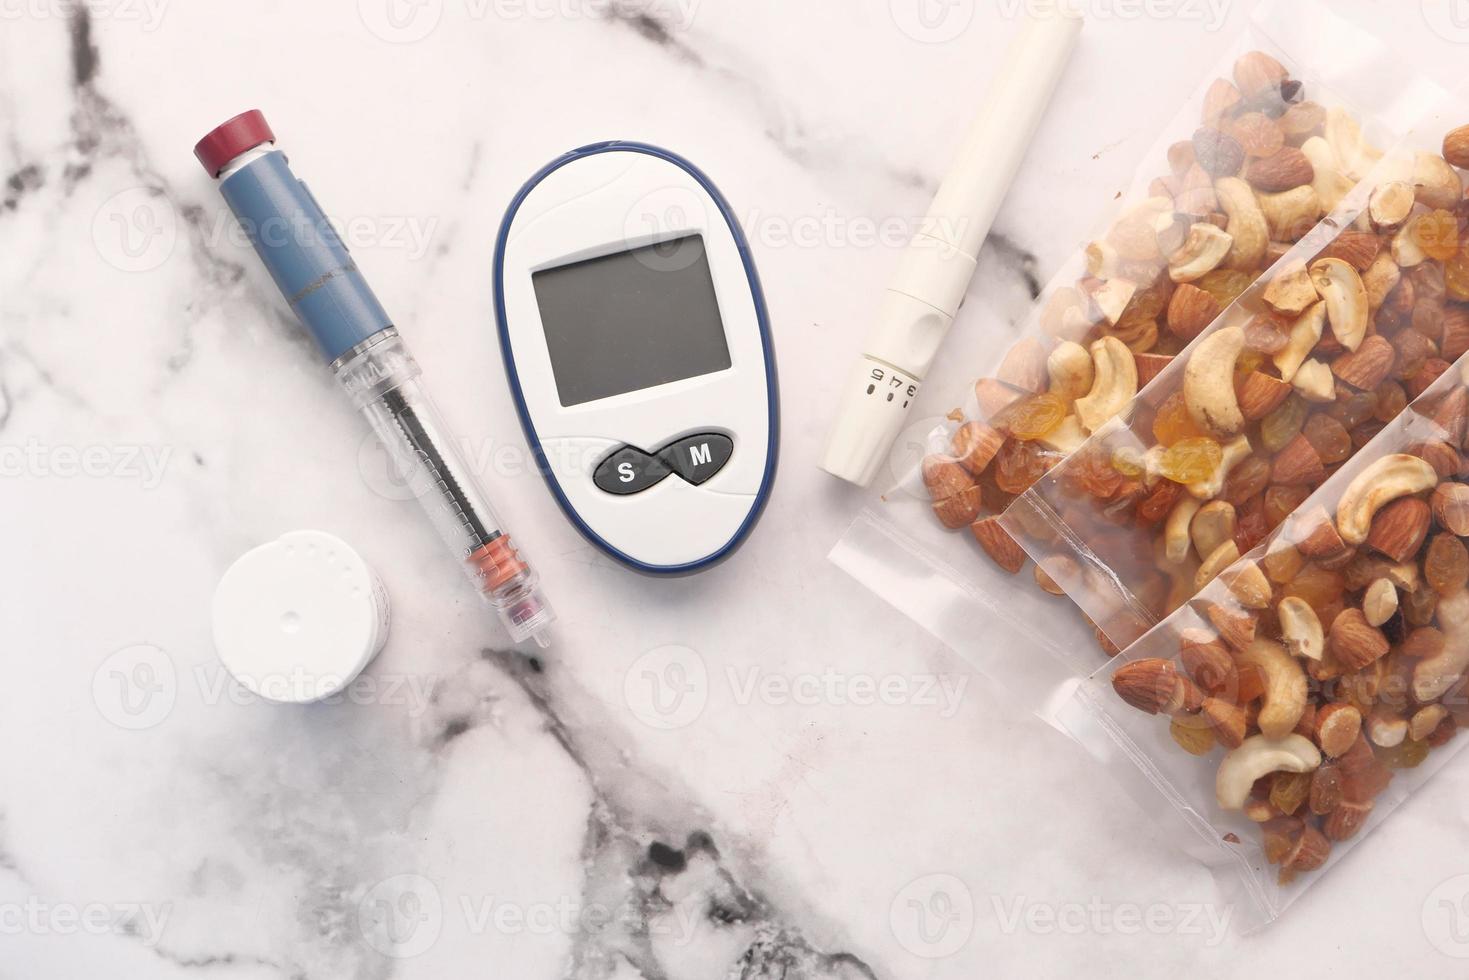 Nahaufnahme von diabetischen Messinstrumenten, Insulin und Mischnuss auf dem Tisch foto